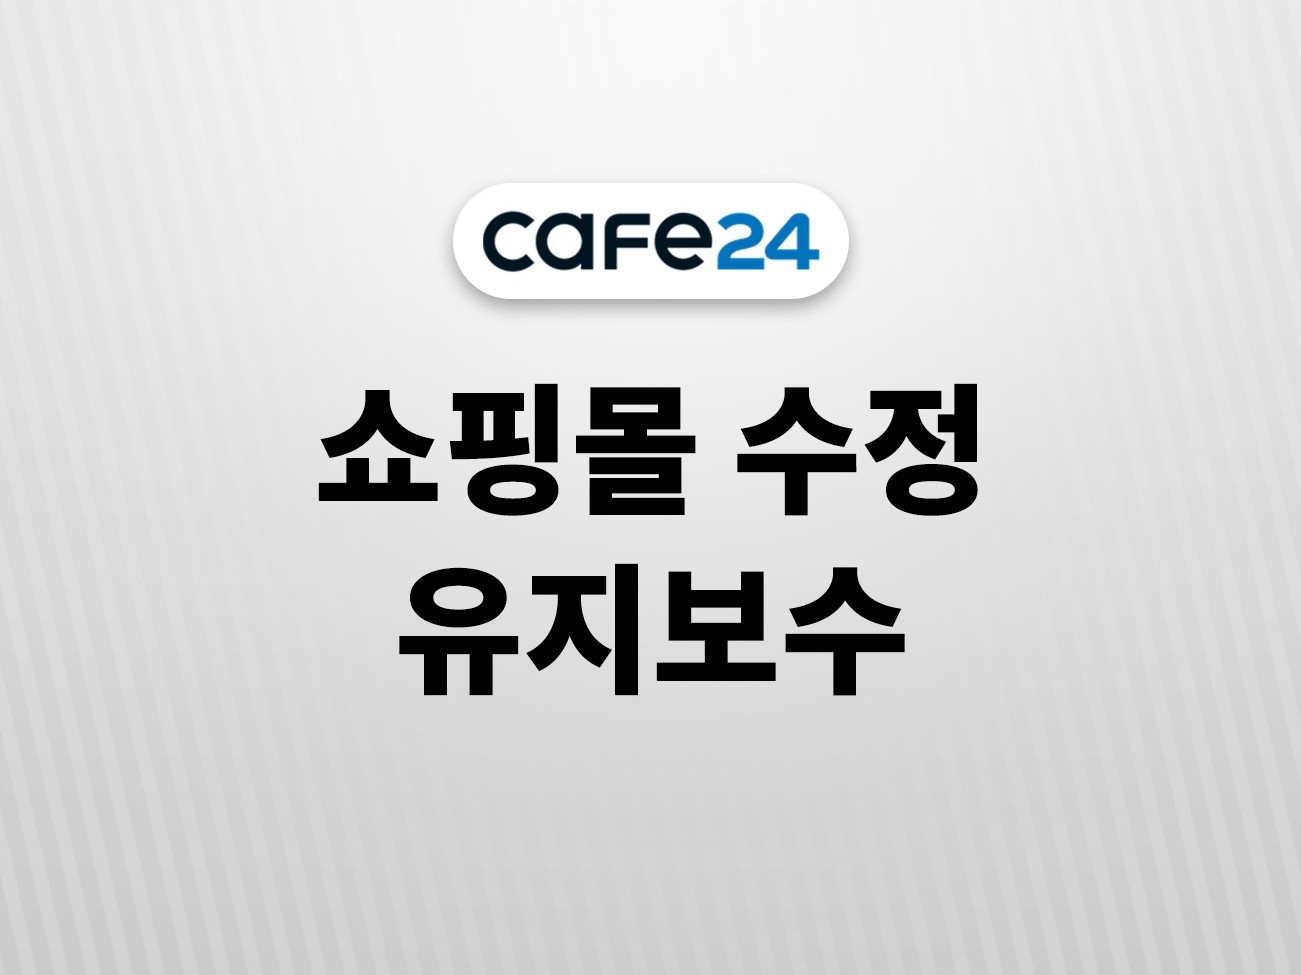 cafe24 쇼핑몰 퍼블리싱 수정 운영 유지보수 해 드립니다.